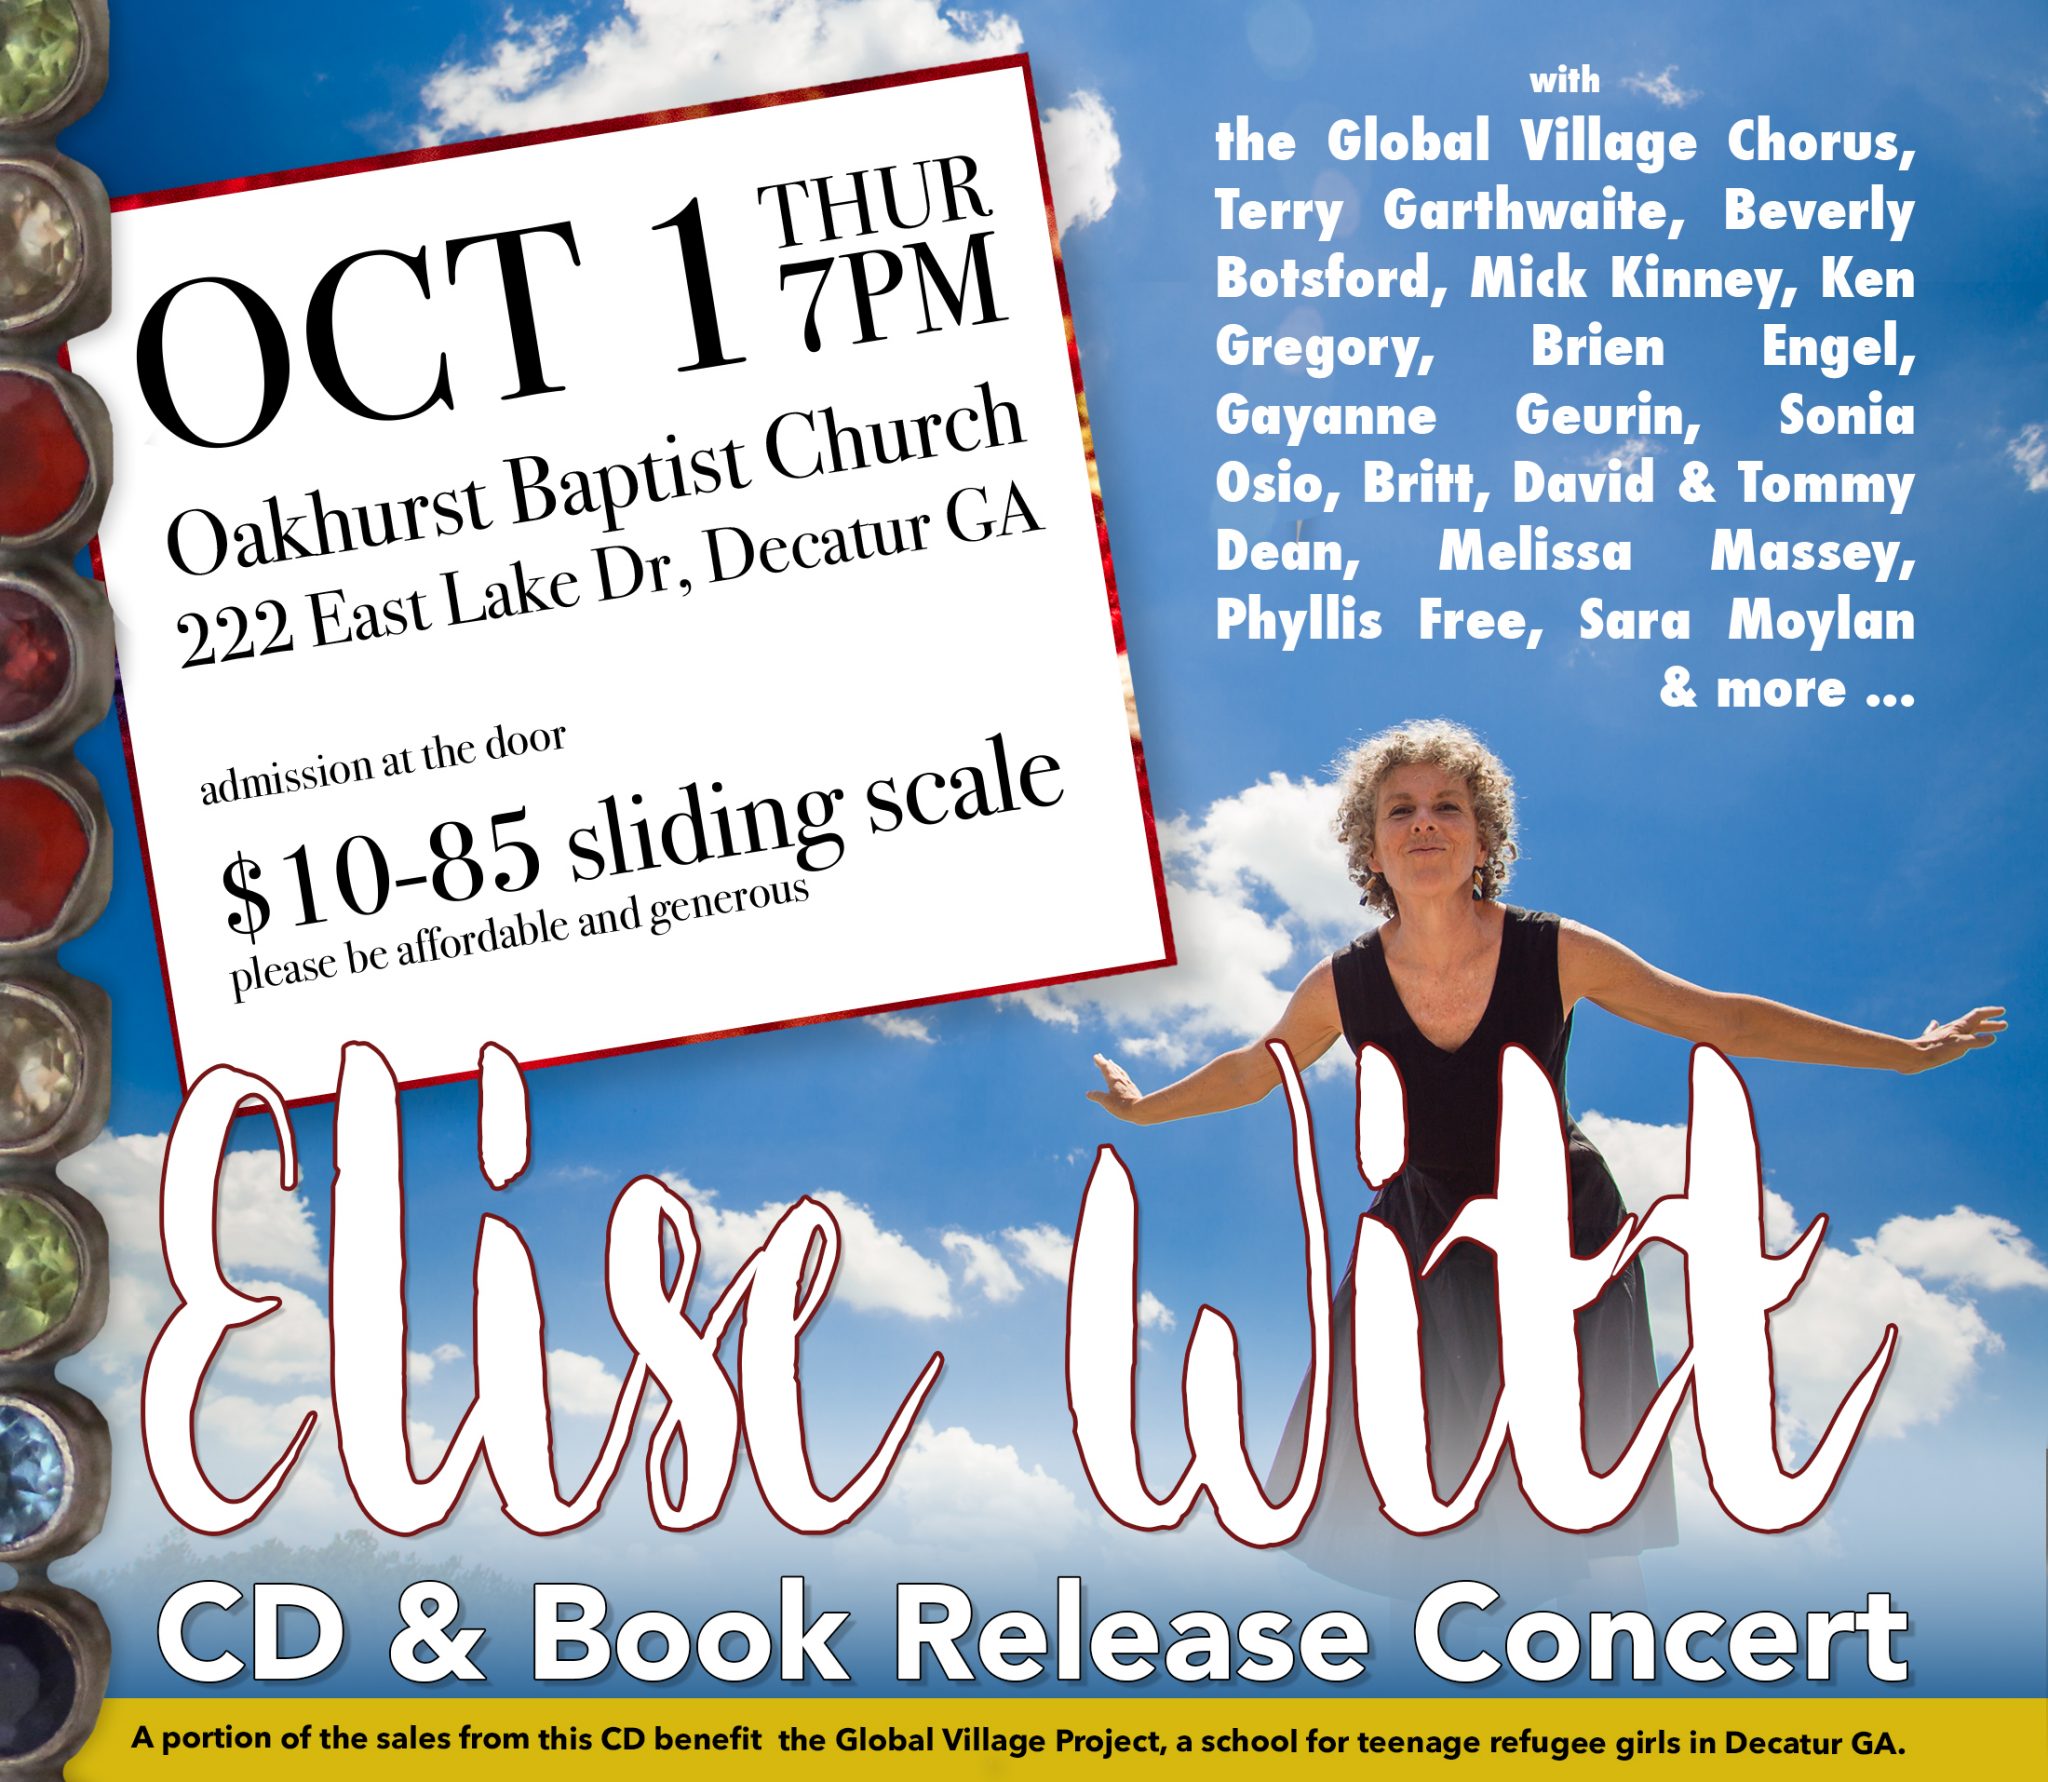 CD & Book Release Concert